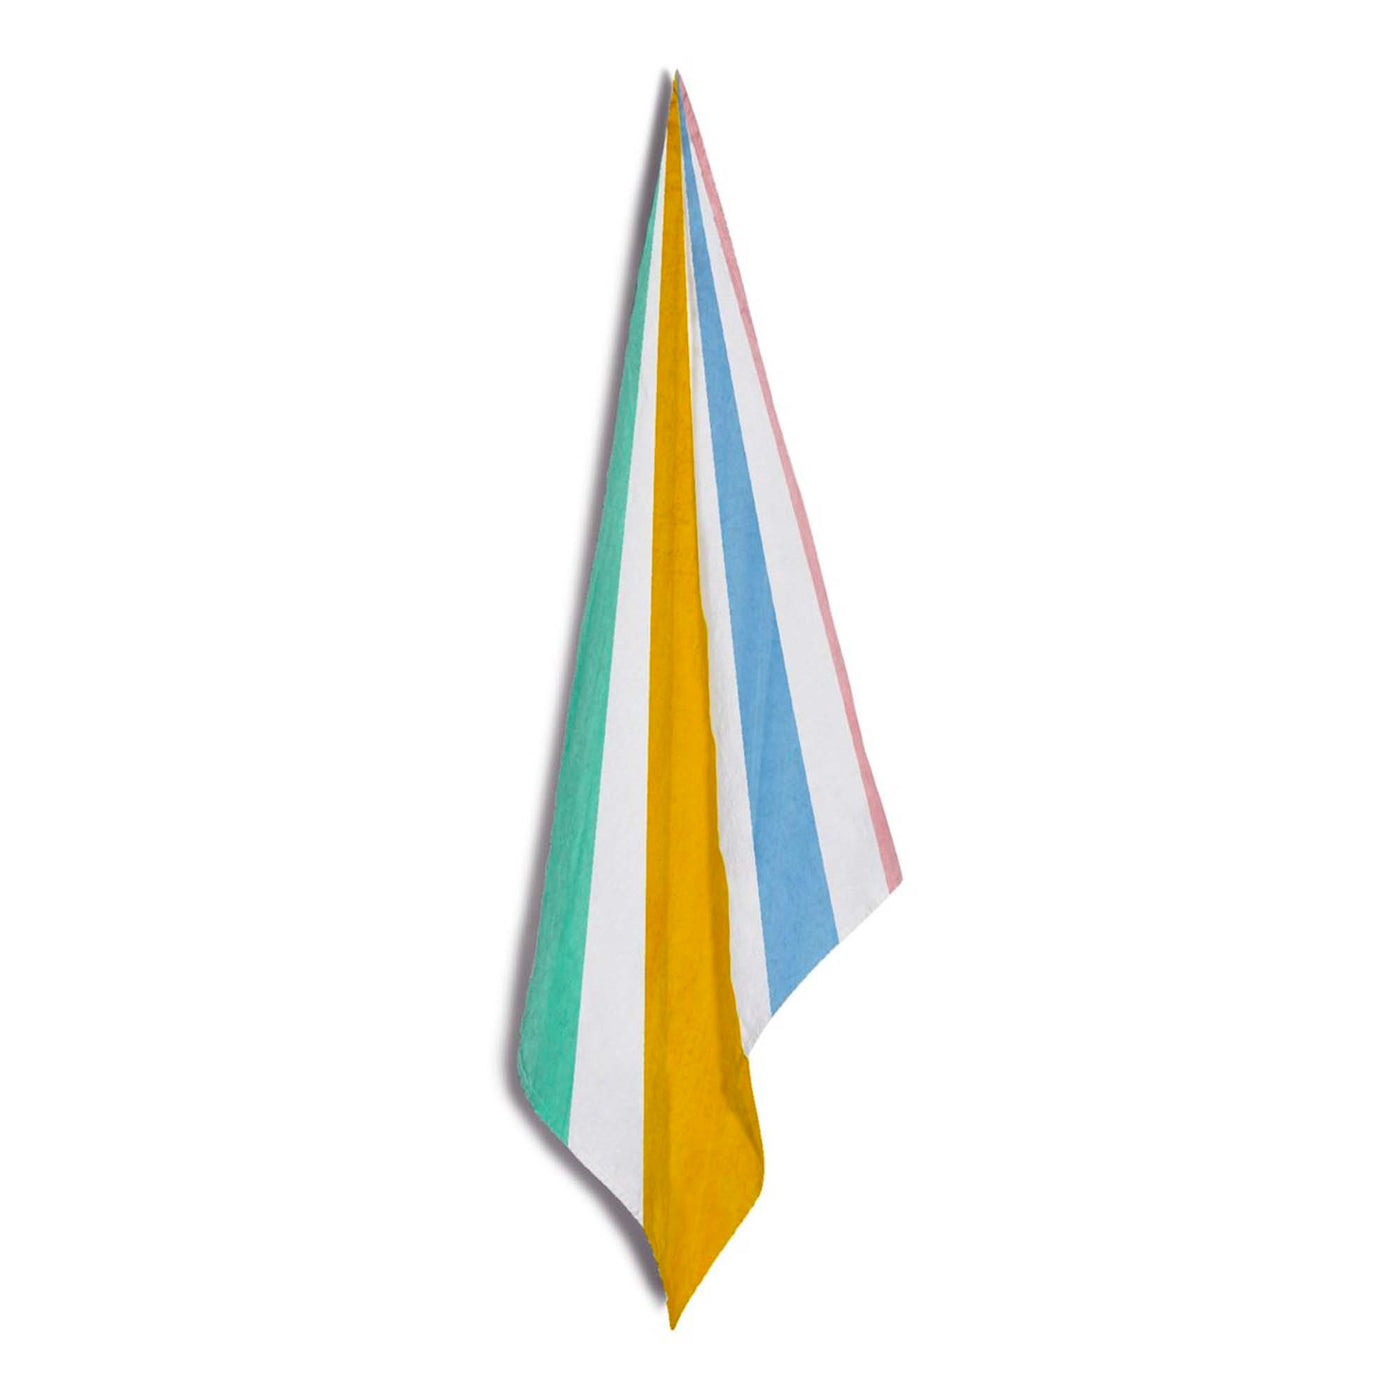 Le Cirque Linen Napkin in Multicolour , Summerill & Bishop, Linen Napkins- Julia Moss Designs